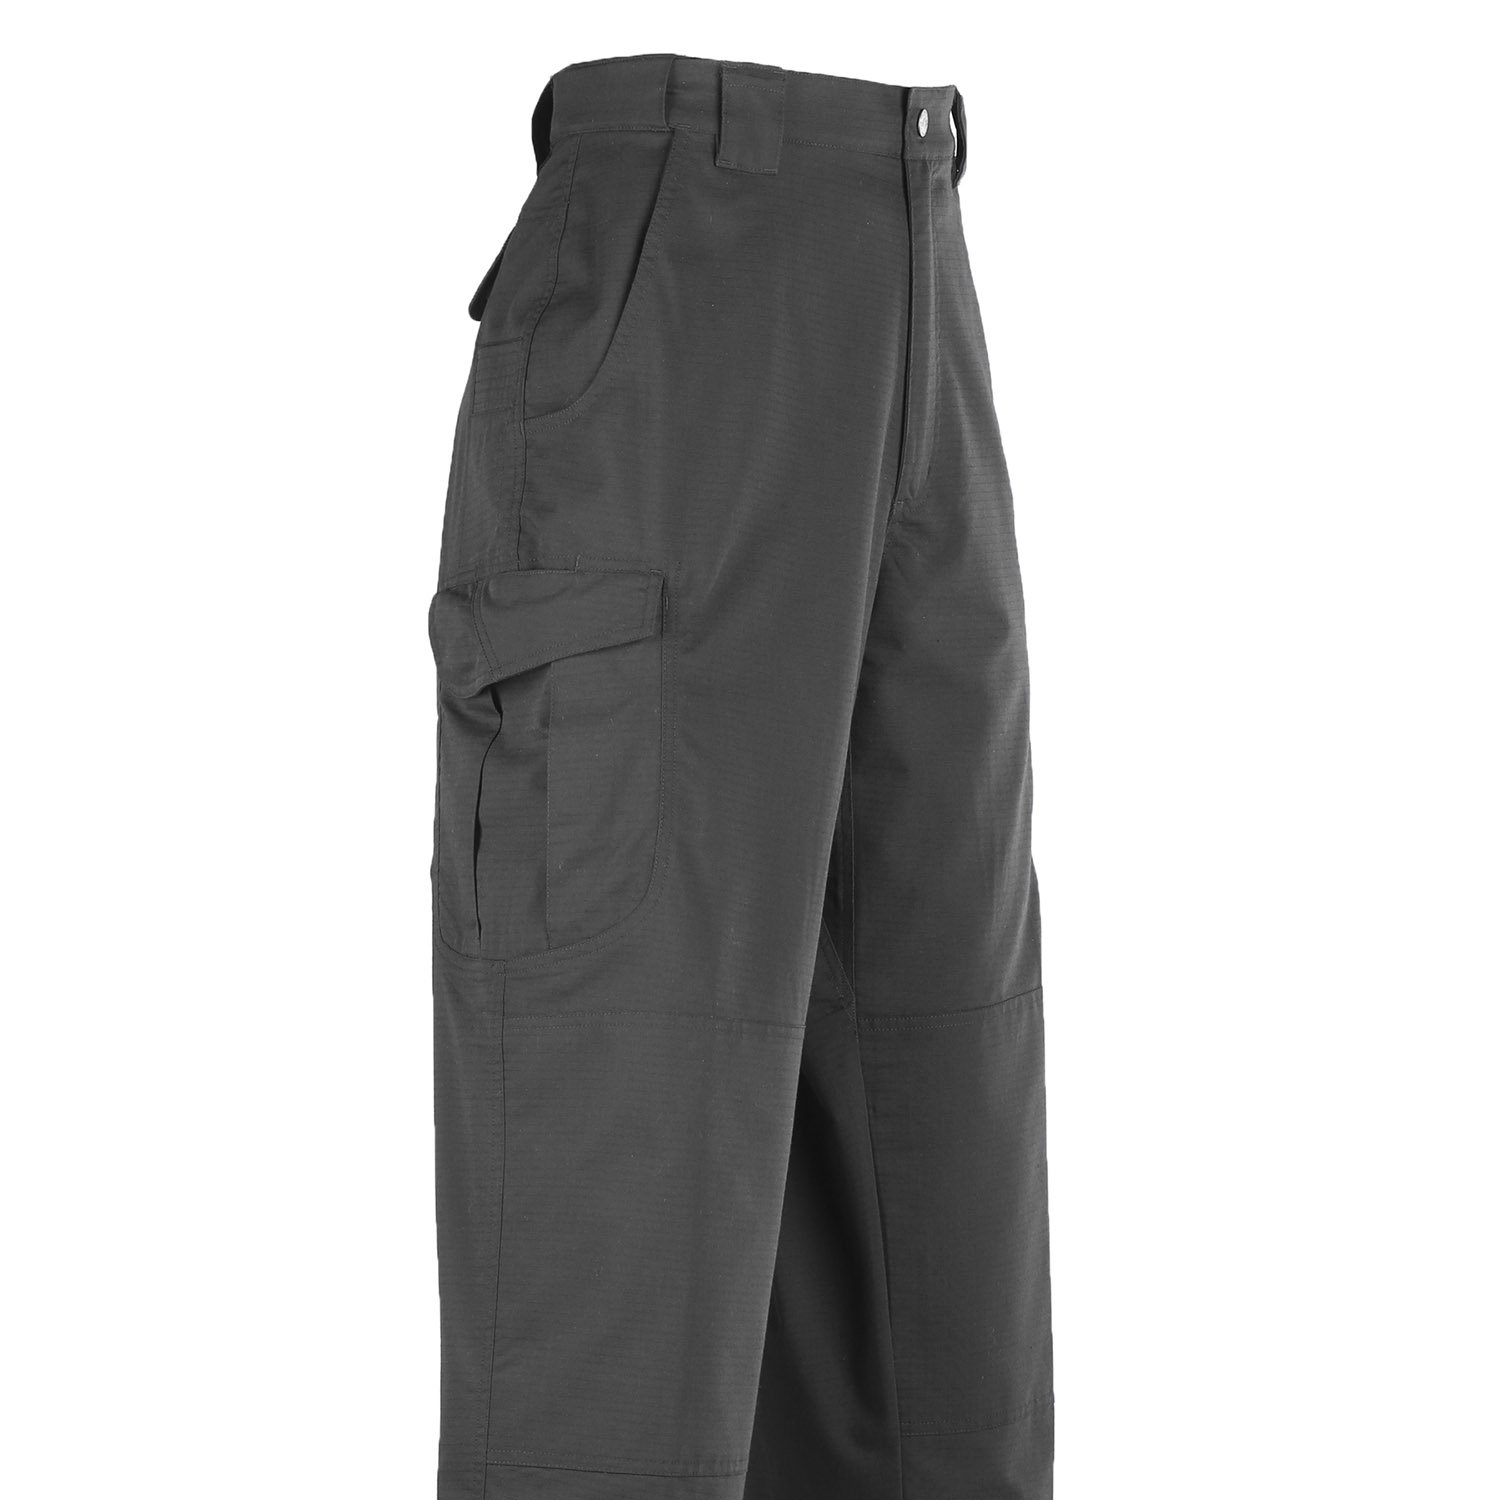 TRU-SPEC 24-7 Ascent Pants